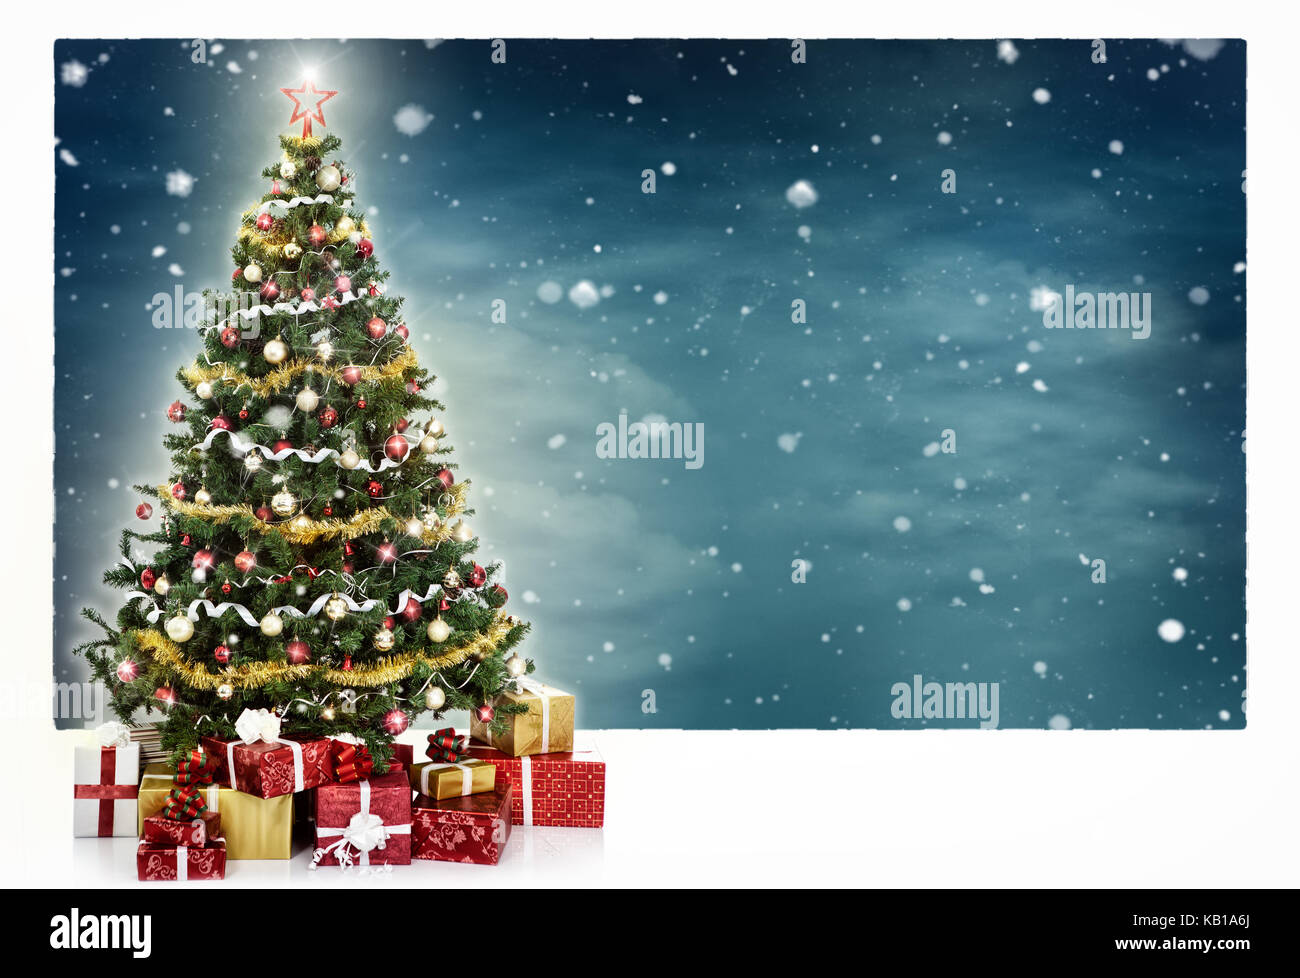 Albero di Natale decorato e confezioni regalo, in inverno la neve sullo sfondo Foto Stock